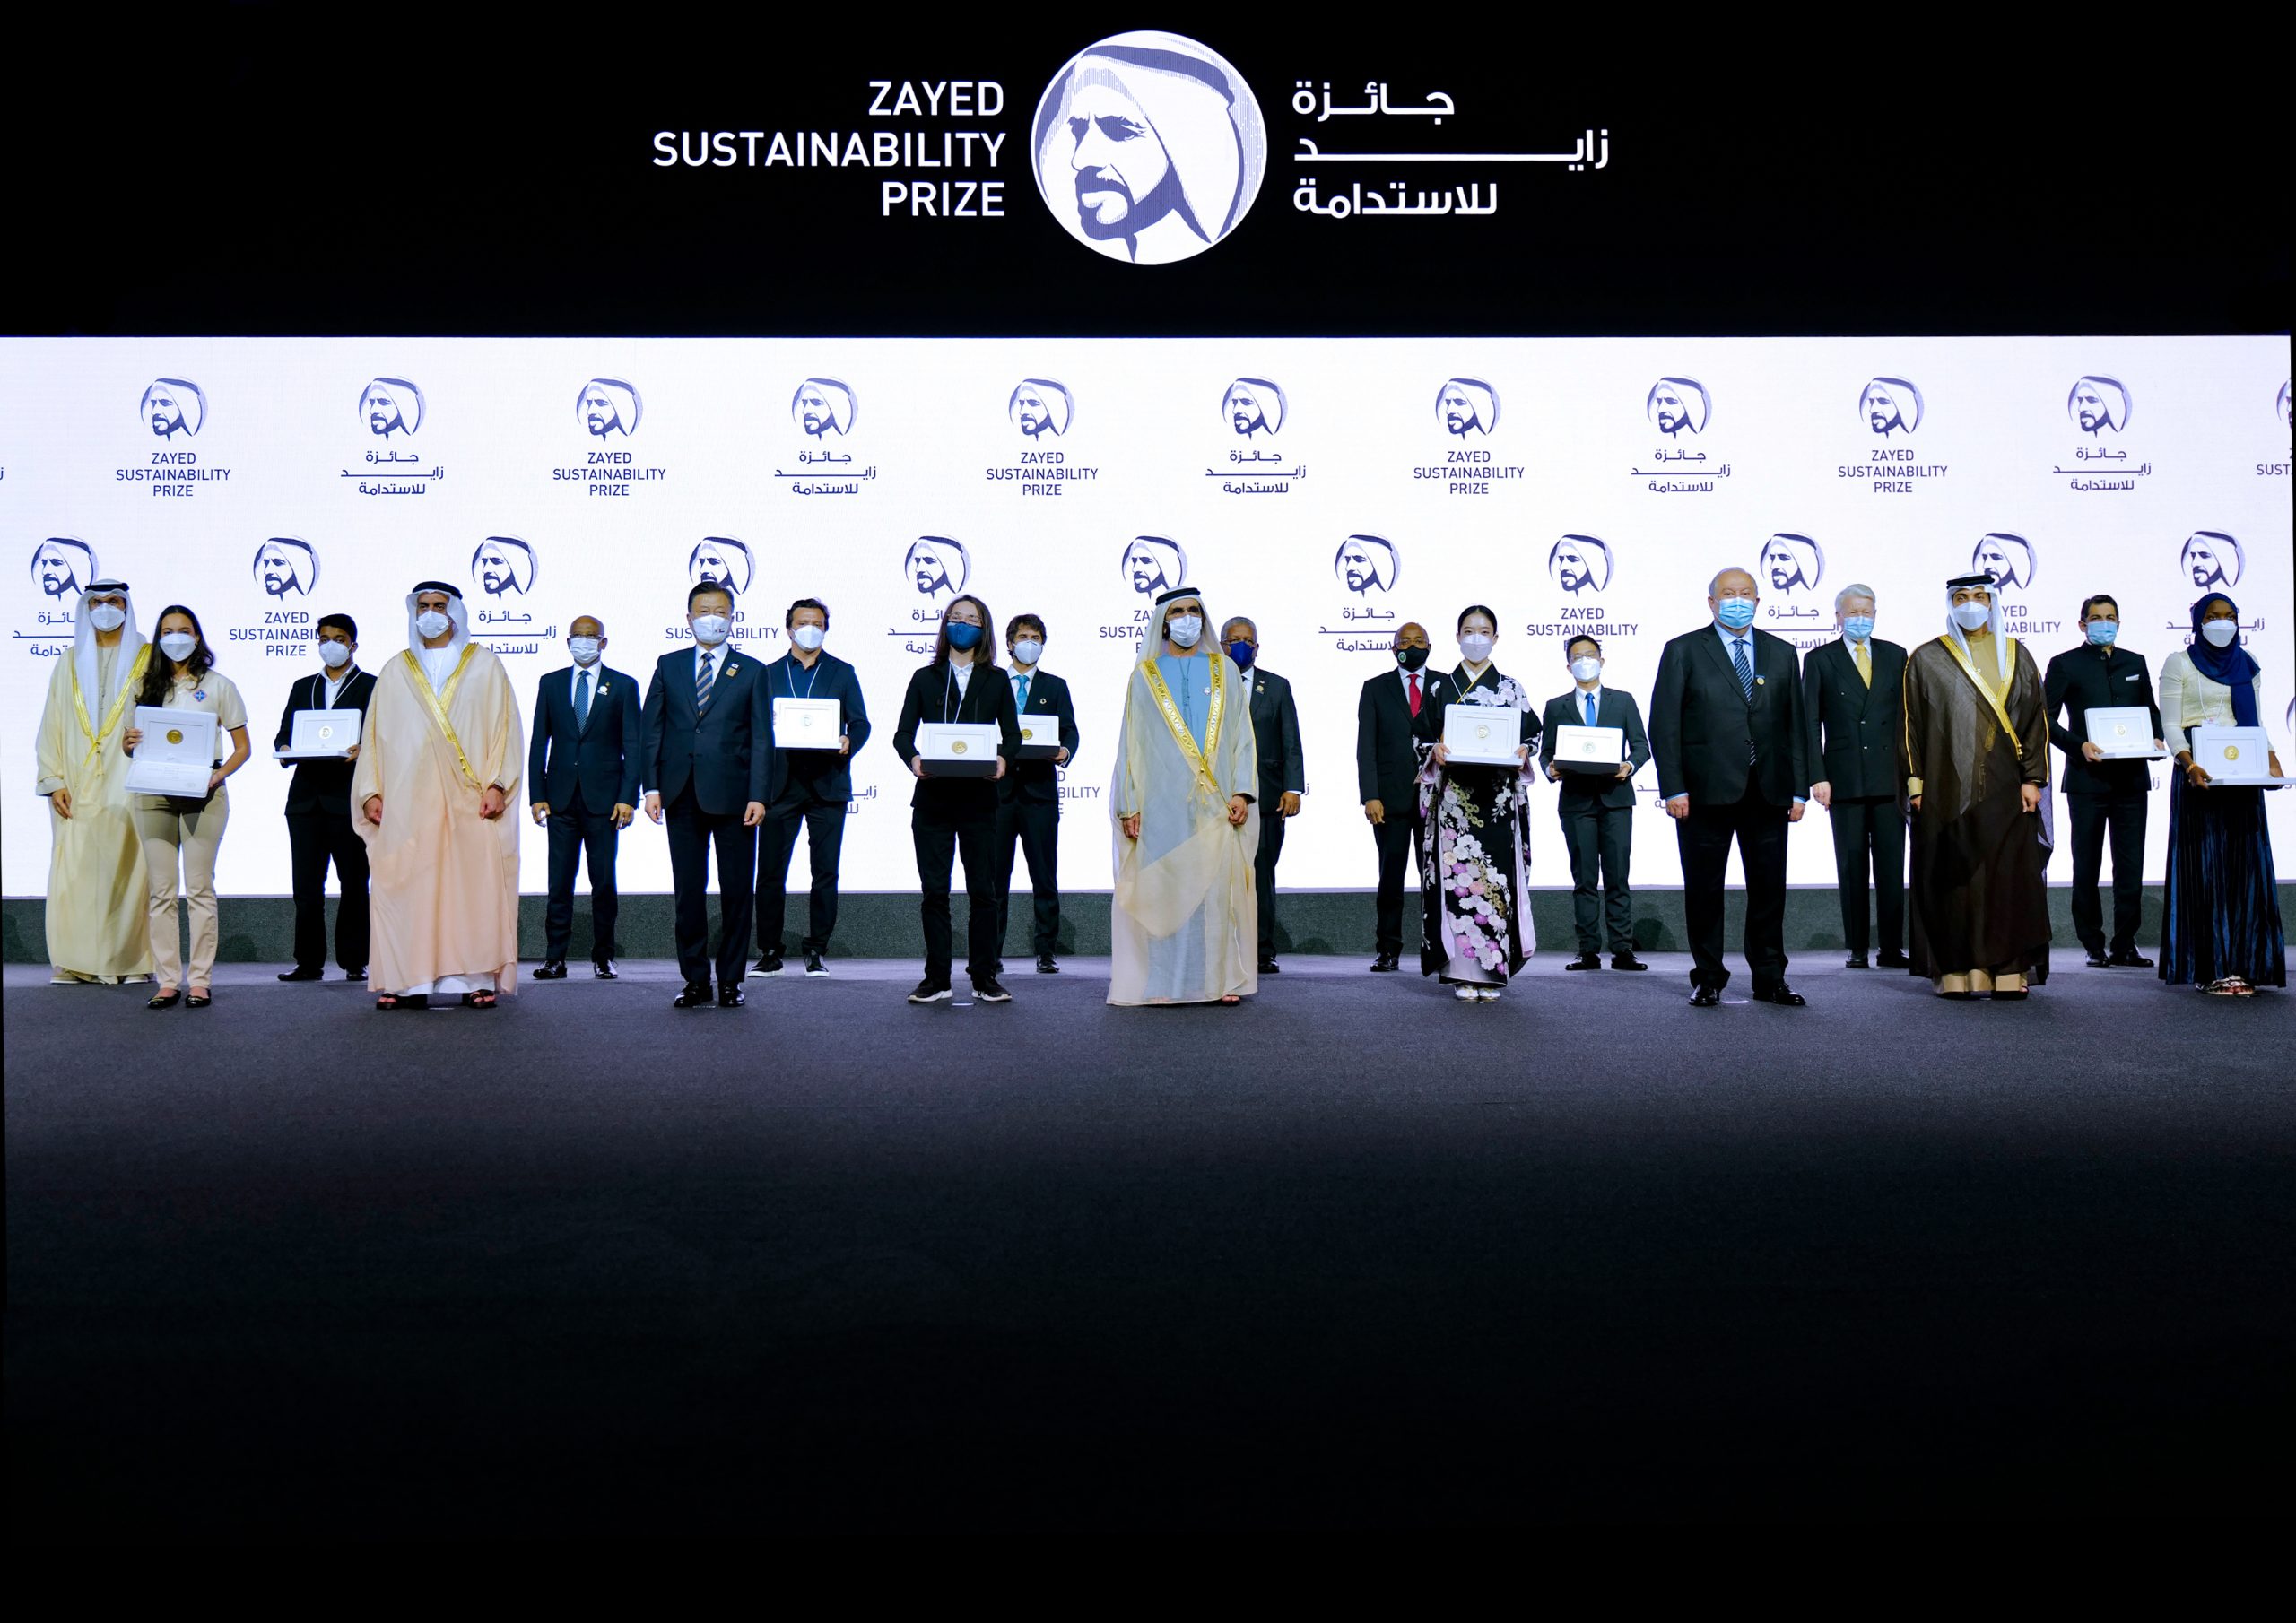 Premio Zayed a la Sostenibilidad abre inscripciones para el ciclo 2023